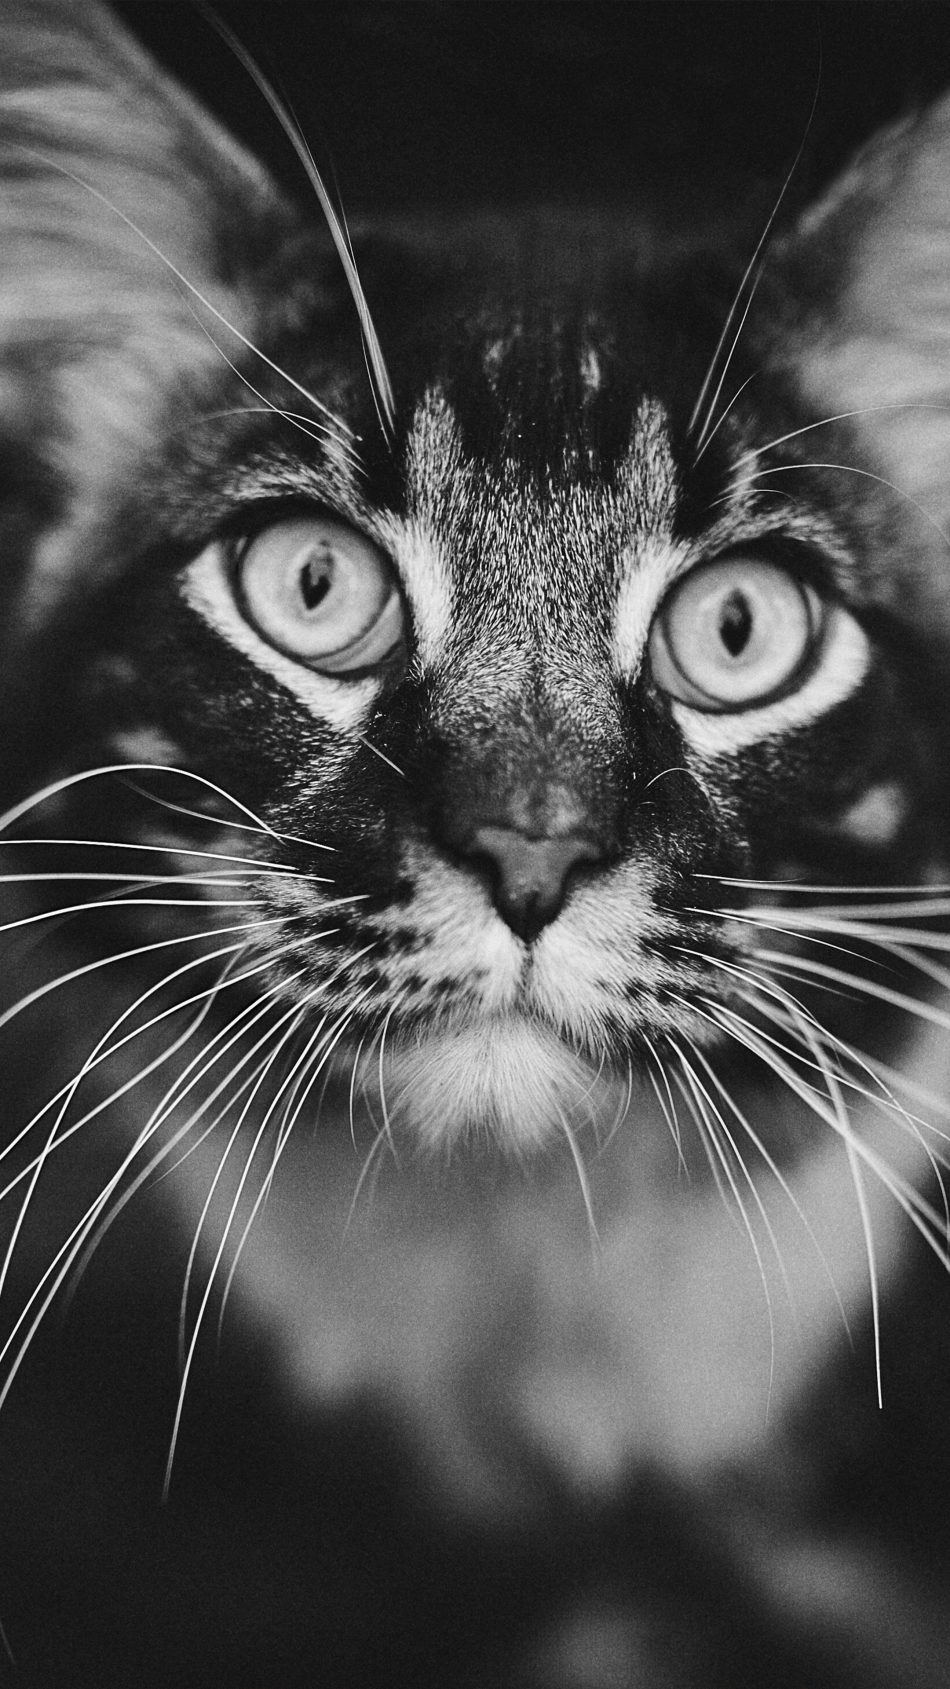 Staring Cat Black & White 4K Ultra HD Mobile Wallpaper